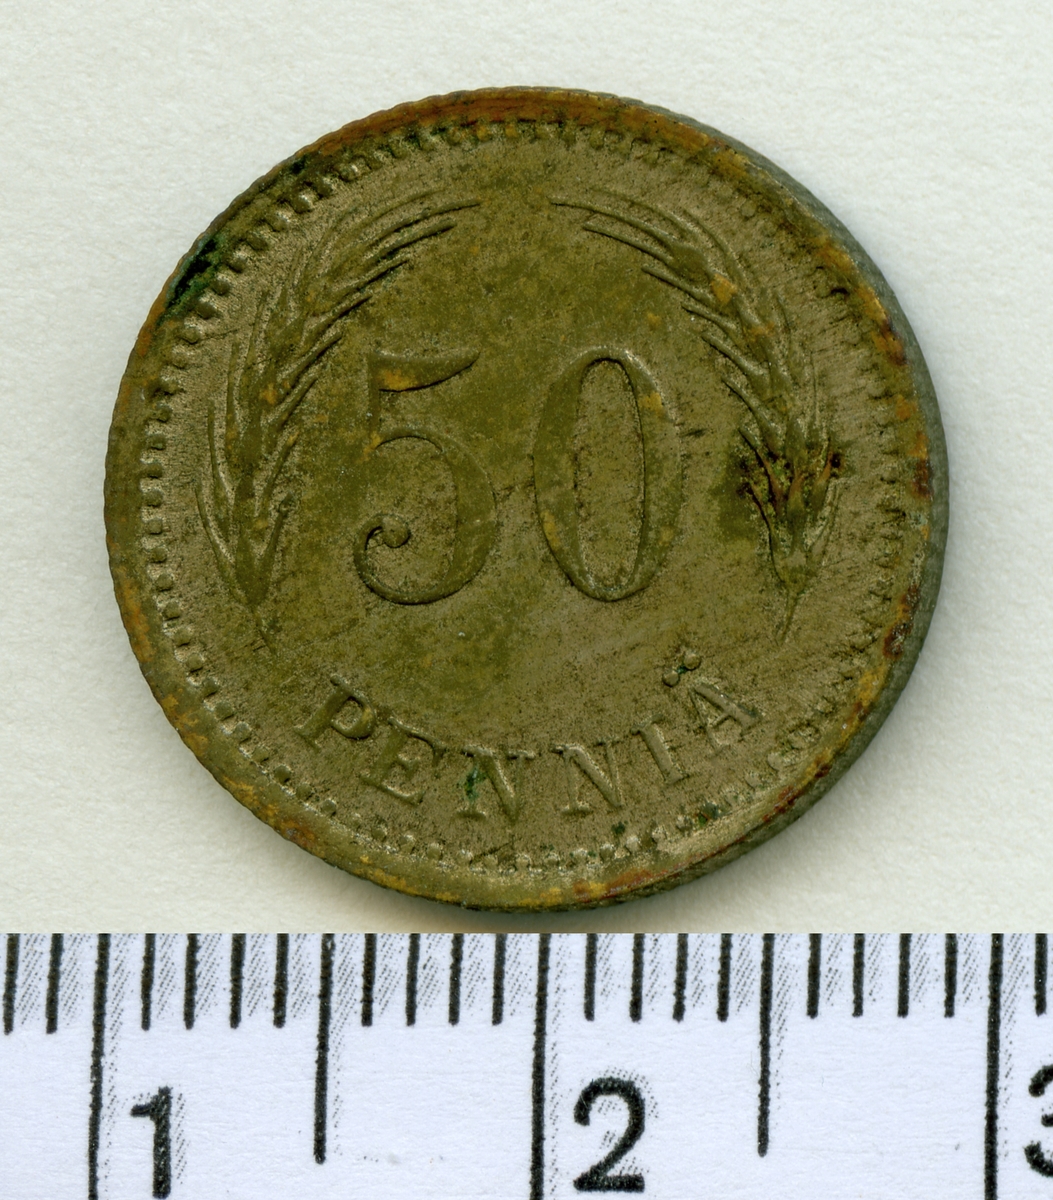 50 Penniä 1921 Finland Kaarlo Juho Ståhlberg.

2 st mynt ifrån Finland av samma valör.